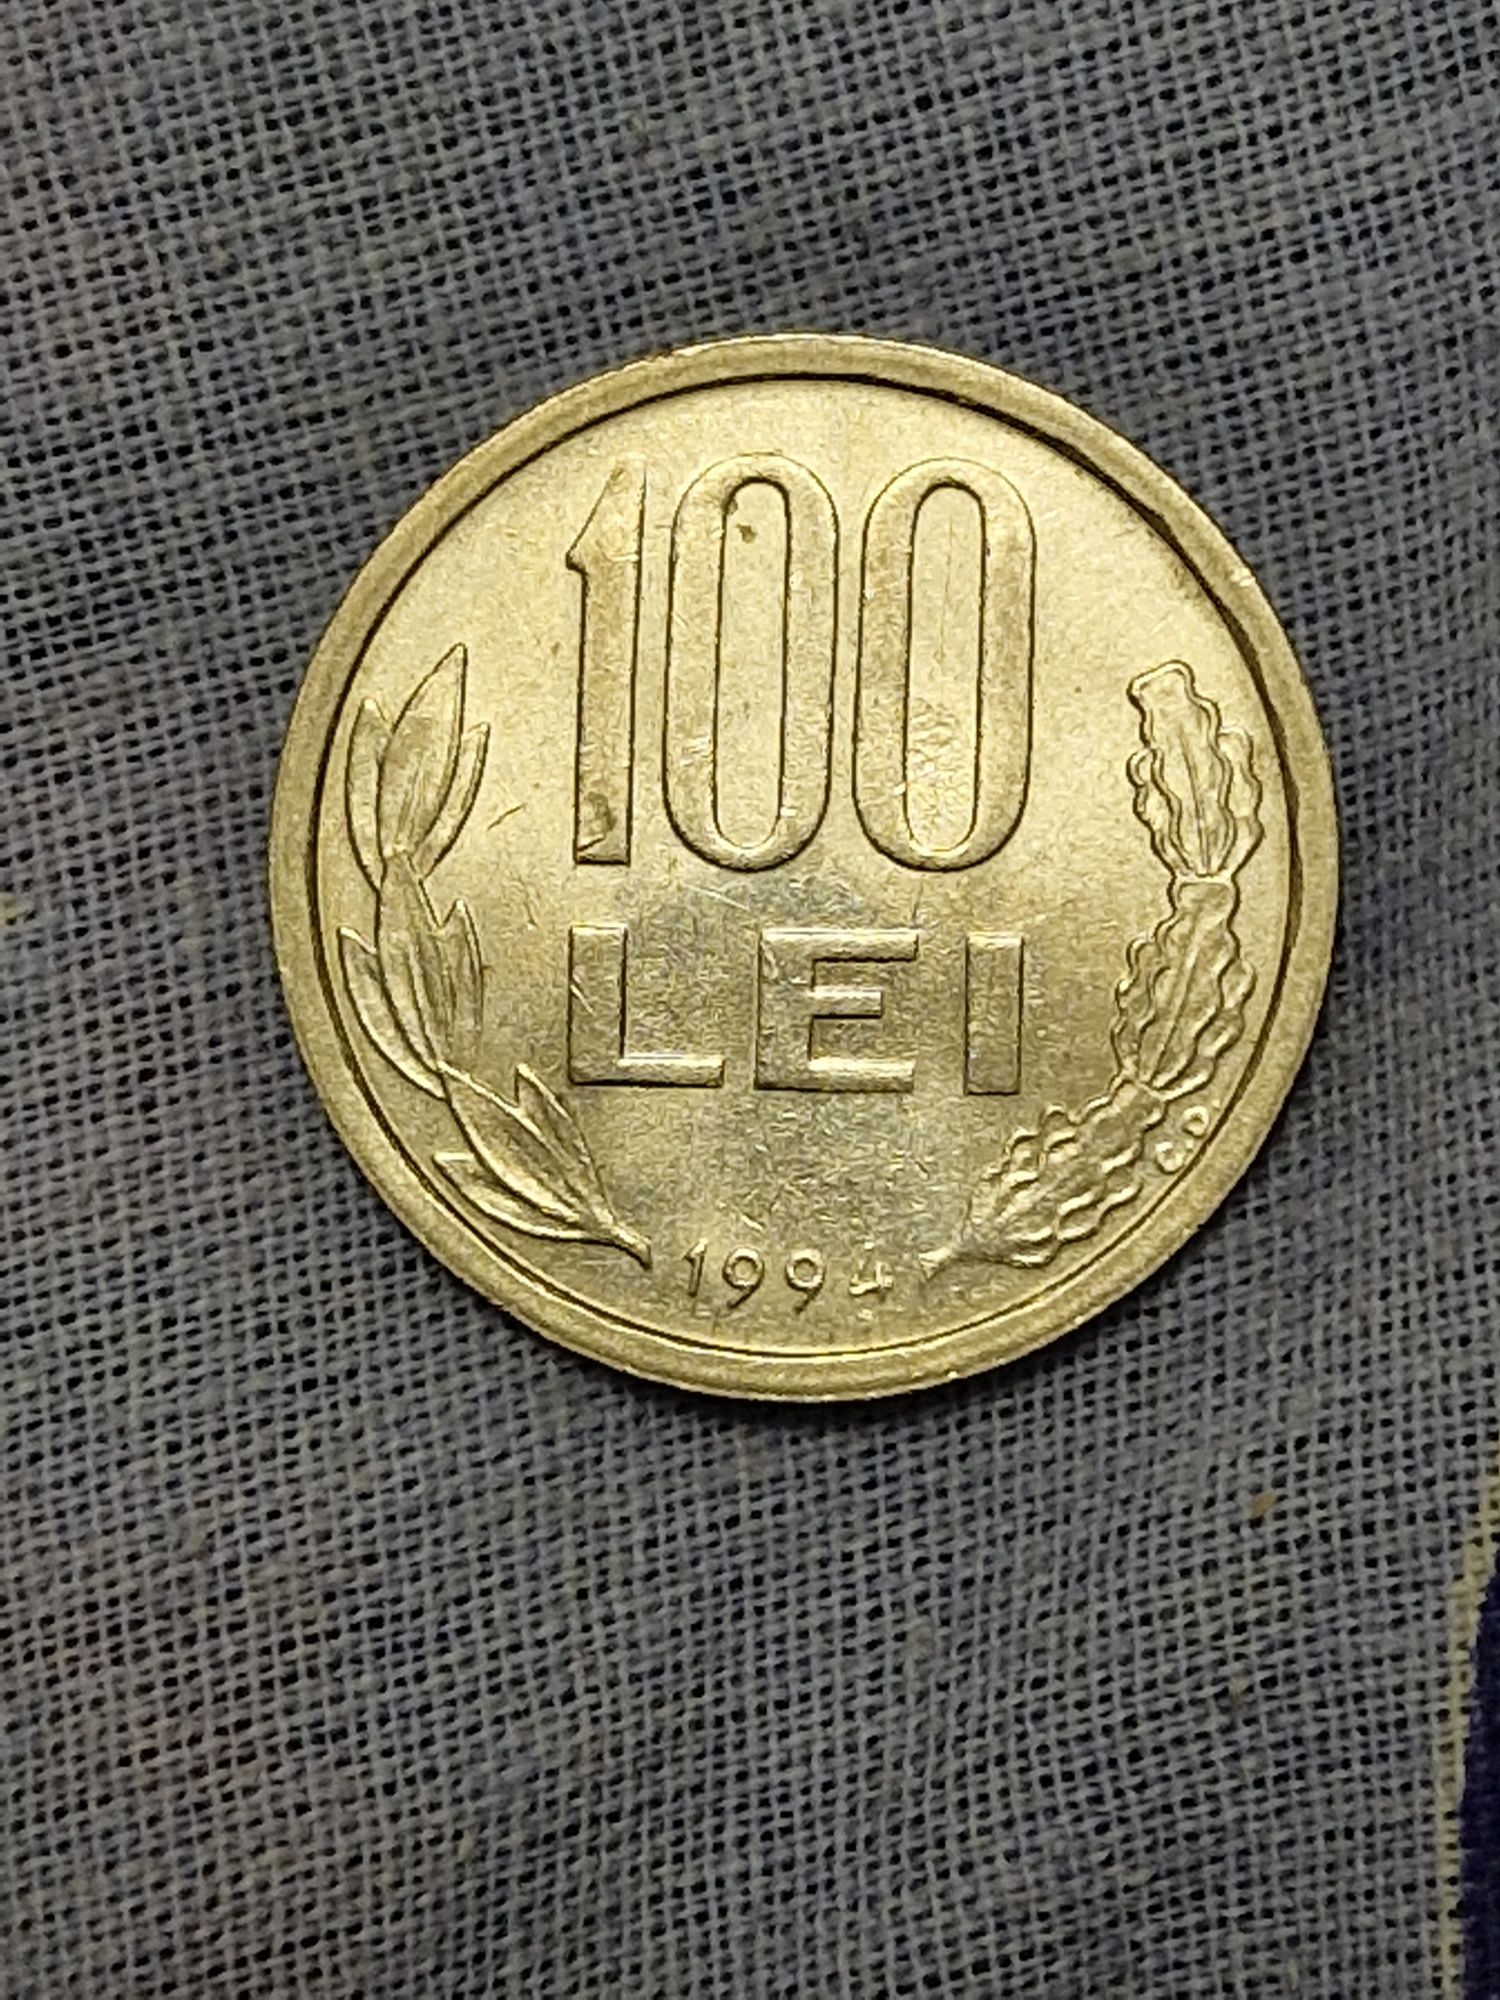 Vand monedă 100 lei/an 1994